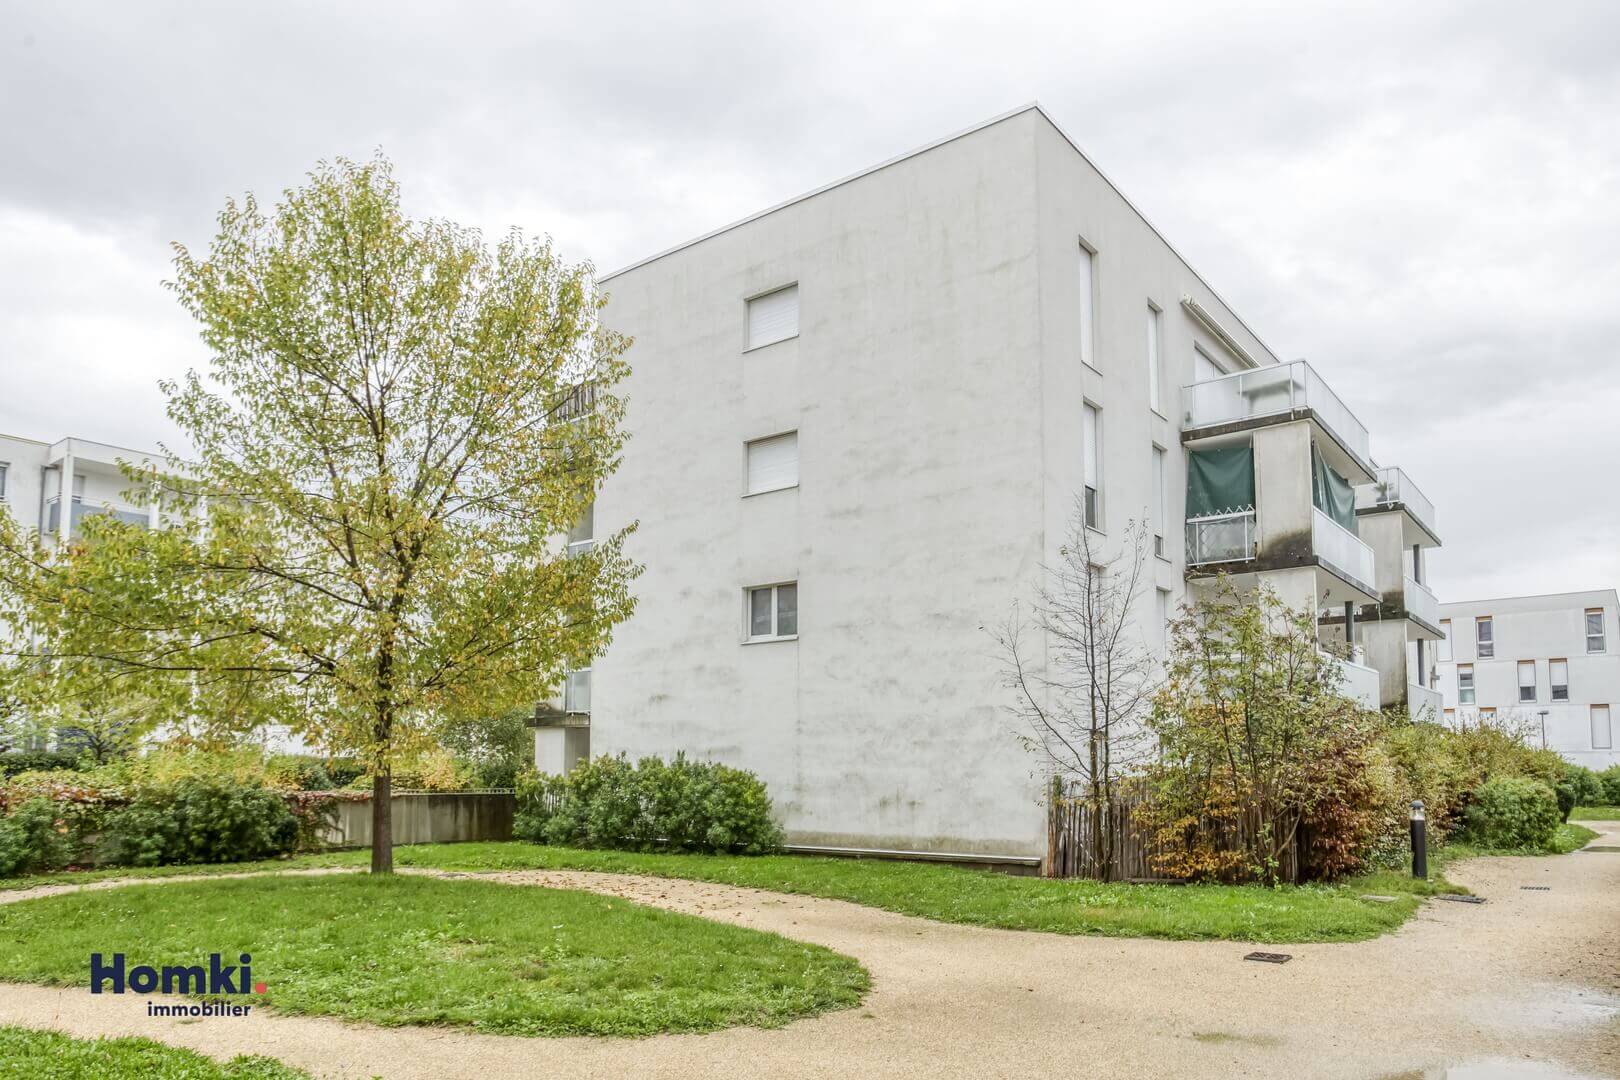 Homki - Vente Appartement  de 67.0 m² à Grenoble 38100